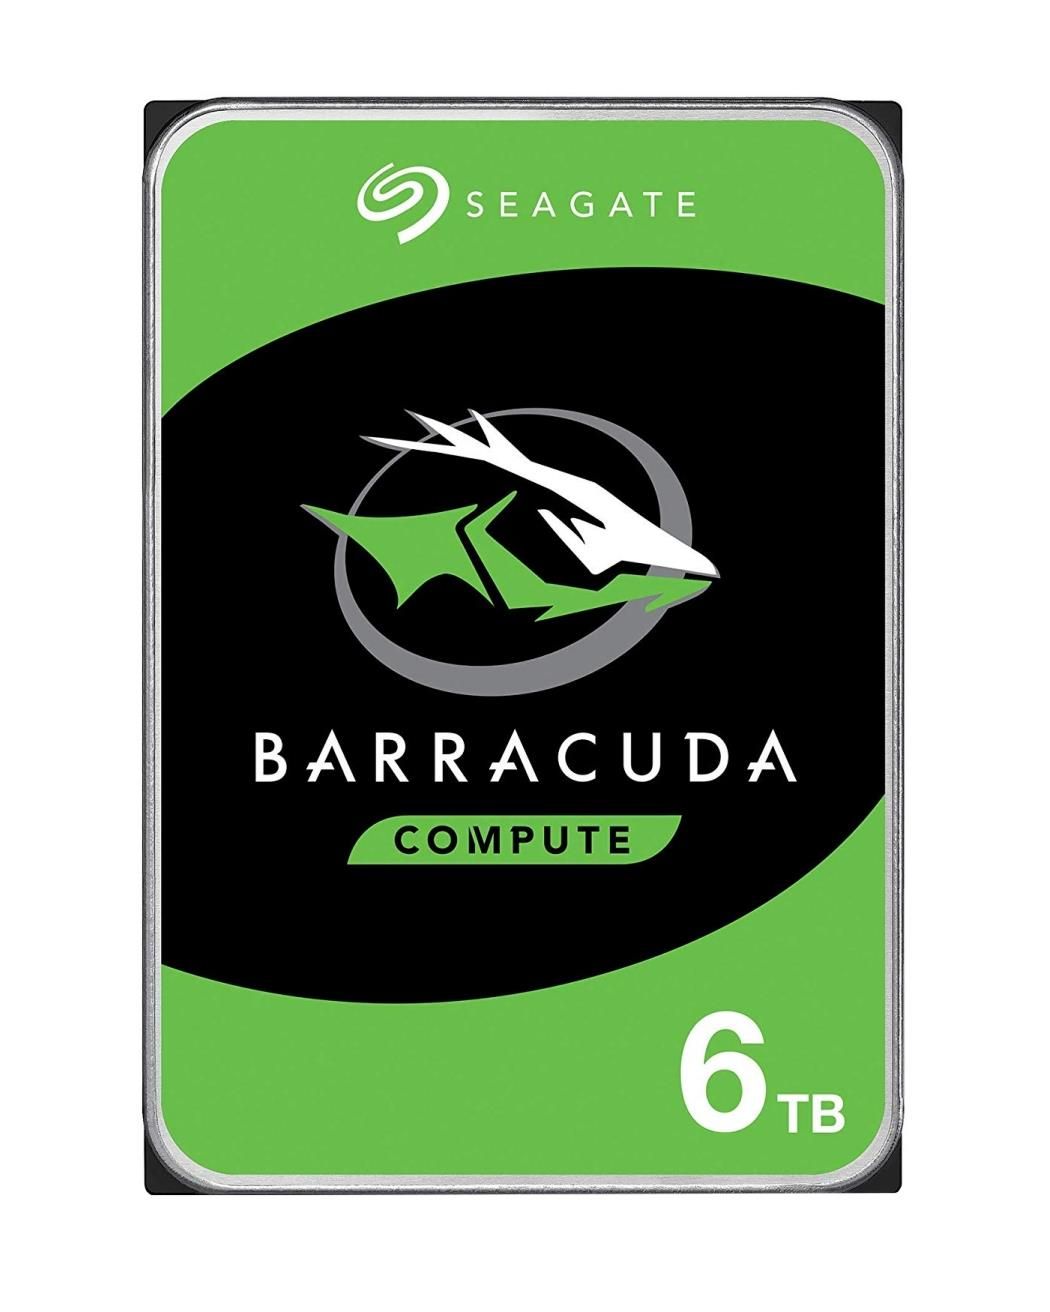 Seagate Barracuda ST6000DM003 HDD